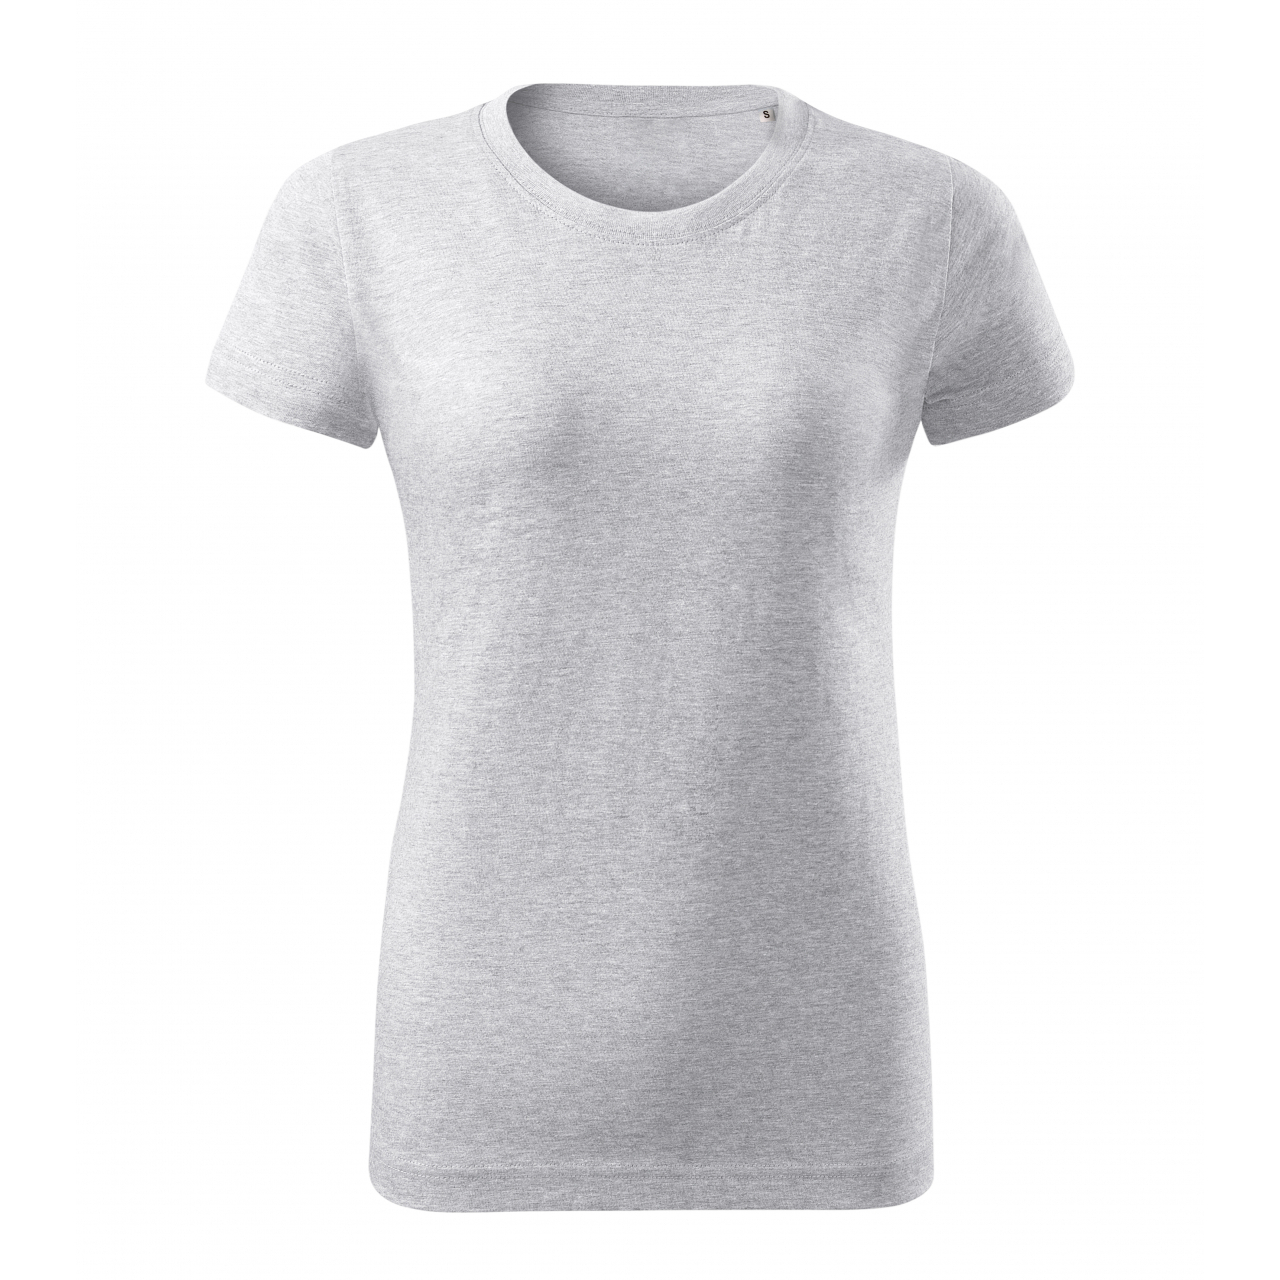 Tričko dámské Malfini Basic Free - světle šedé, S